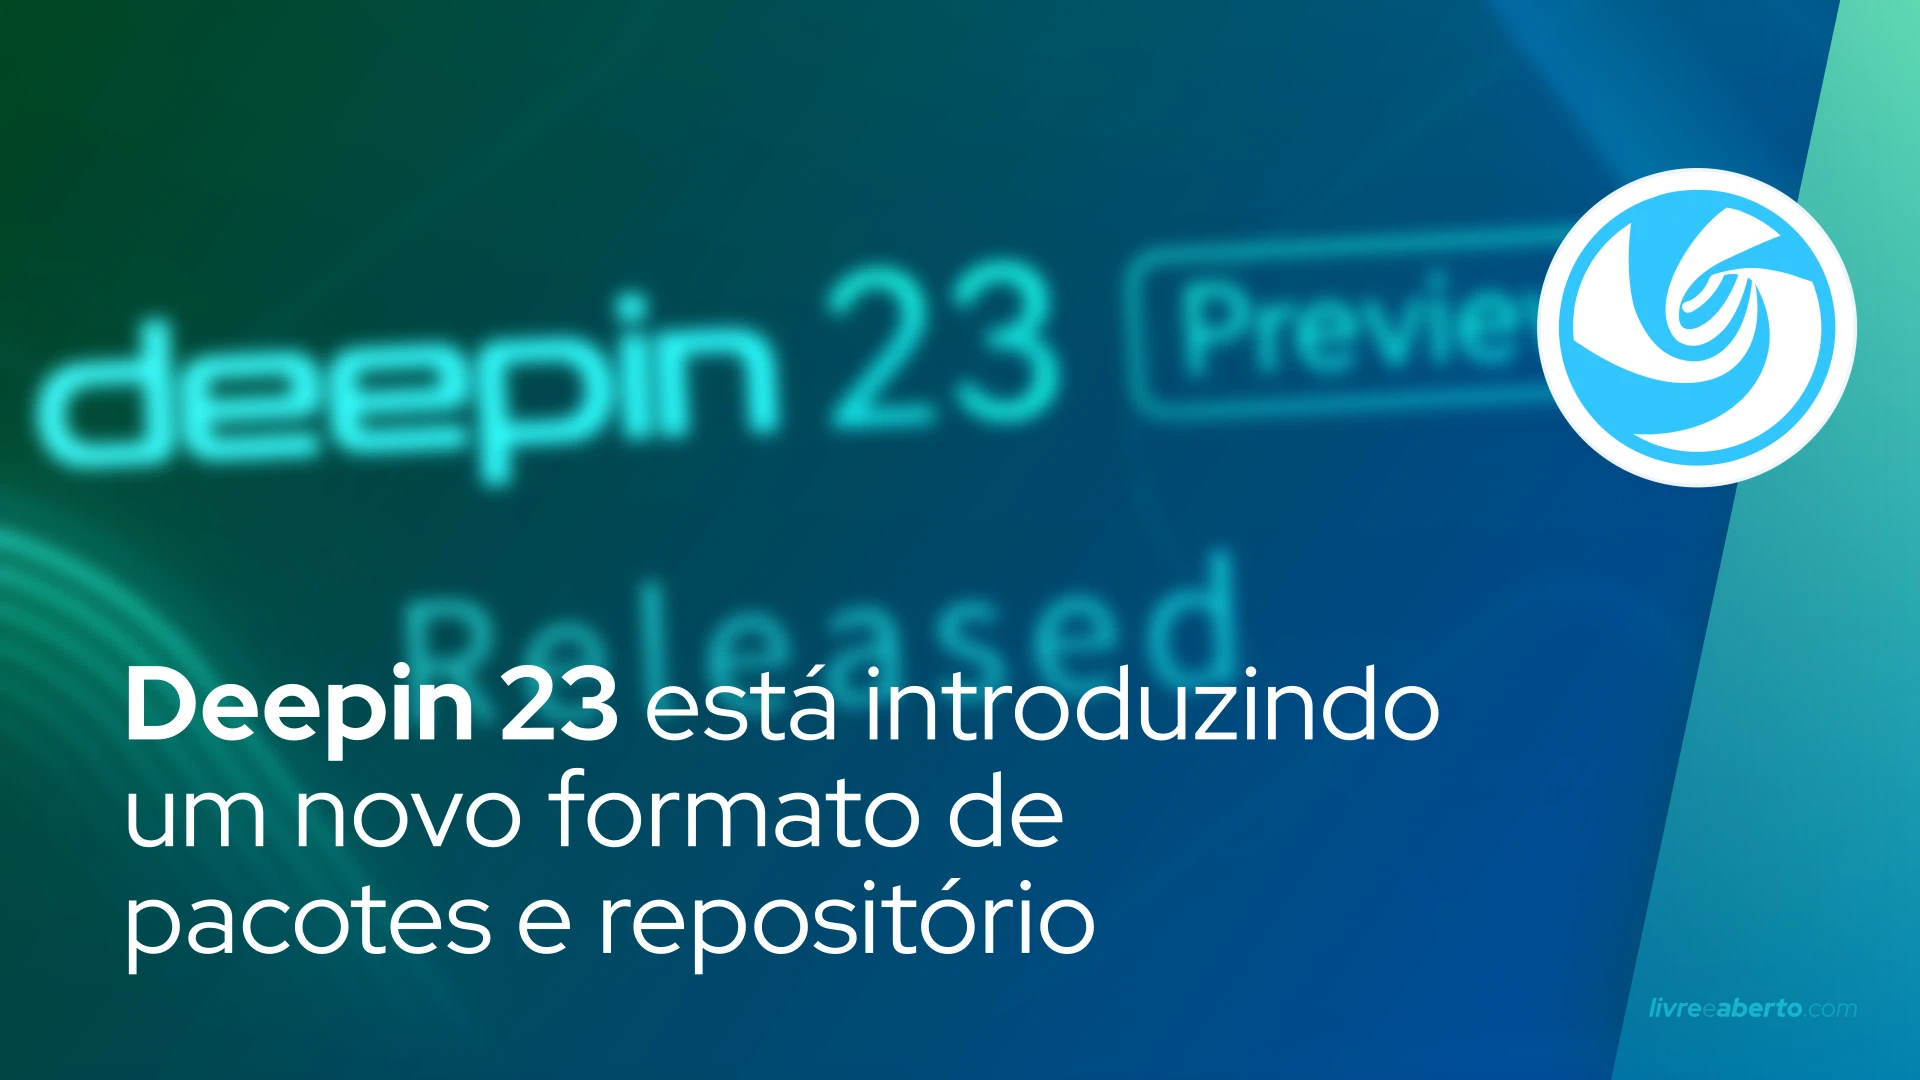 Deepin 23 está introduzindo um novo formato de pacotes e repositório